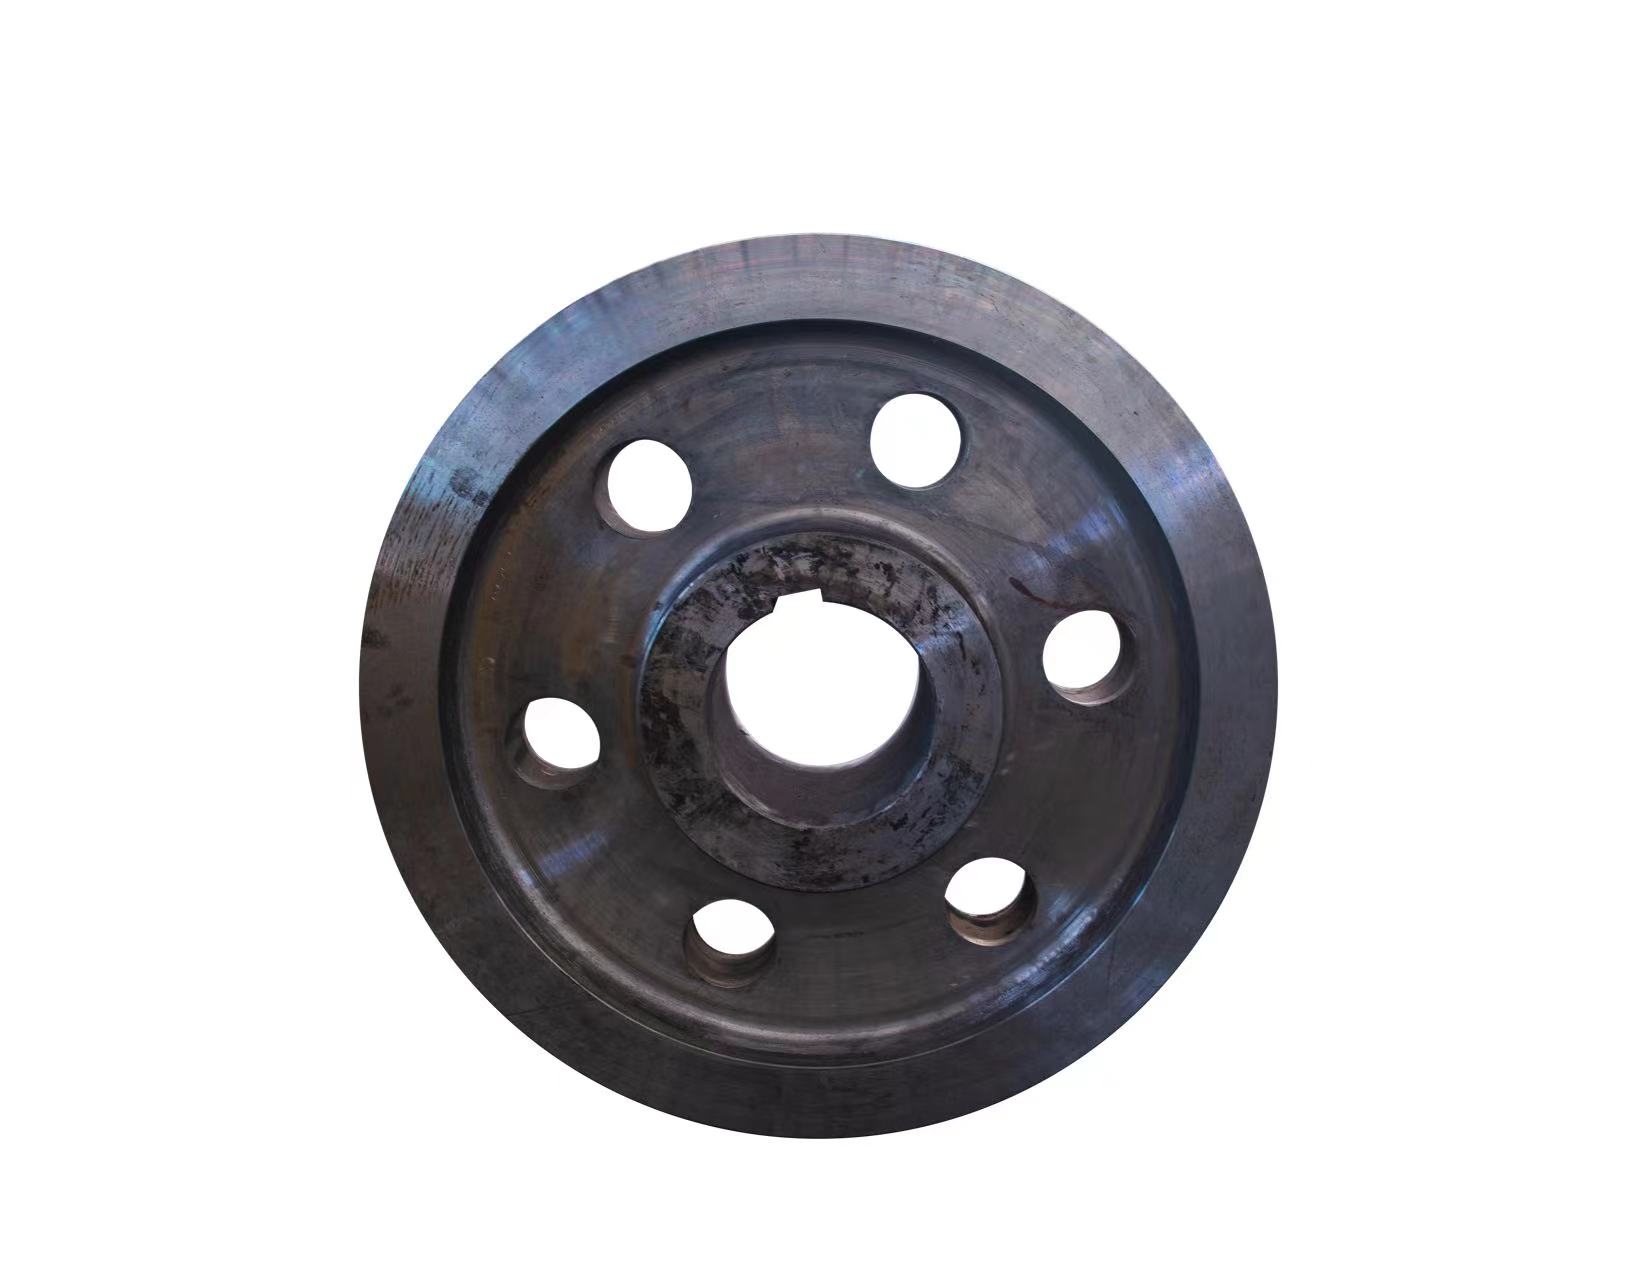 Steel Sepur wheel free forgings digunakake kanggo Sepur